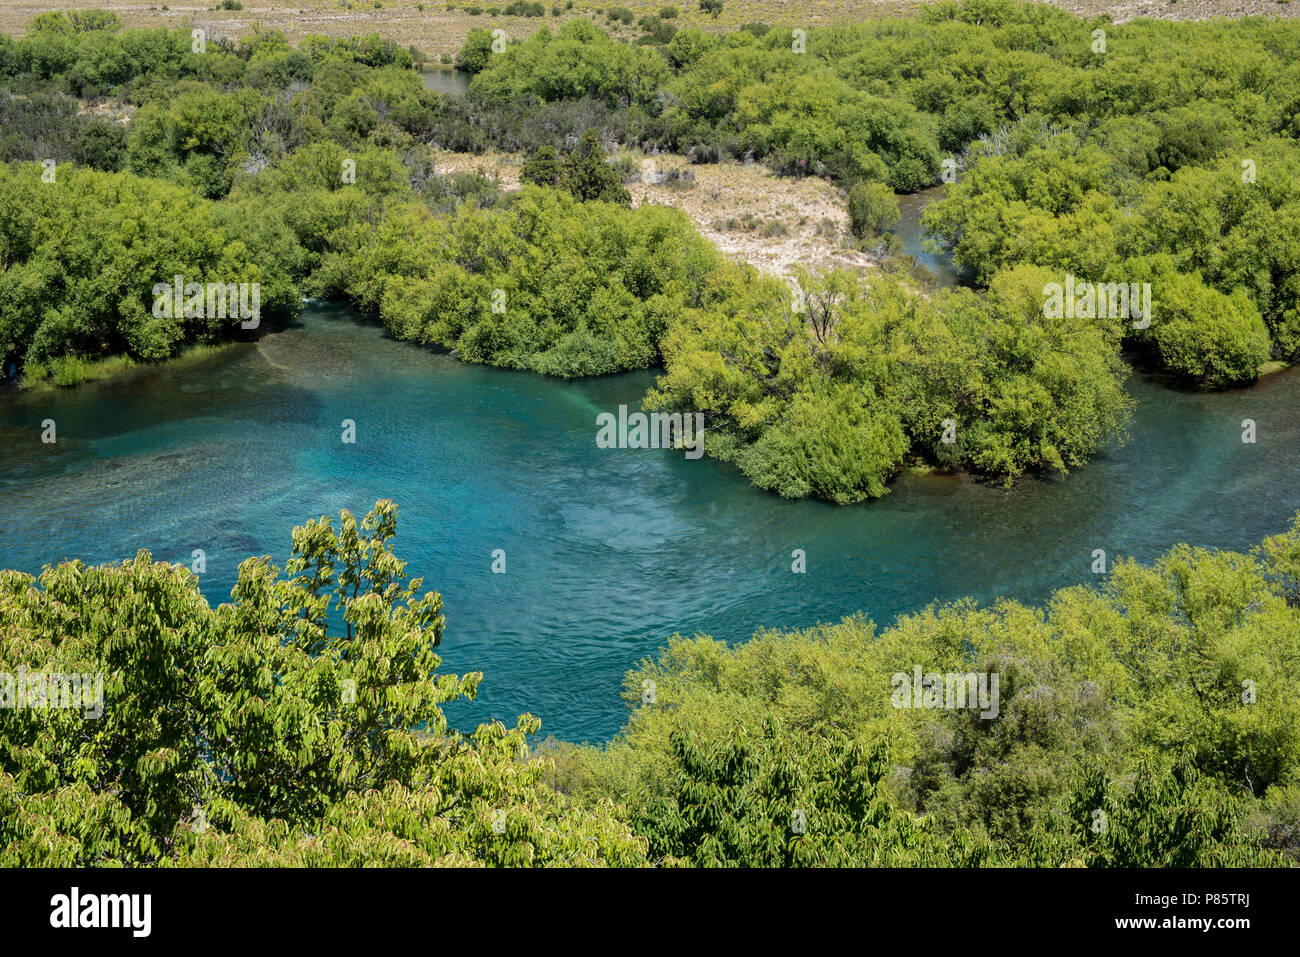 Blaues Wasser Strom in einer schönen grünen Landschaft, Natur Landschaft der wilden Wald Umwelt. Stockfoto